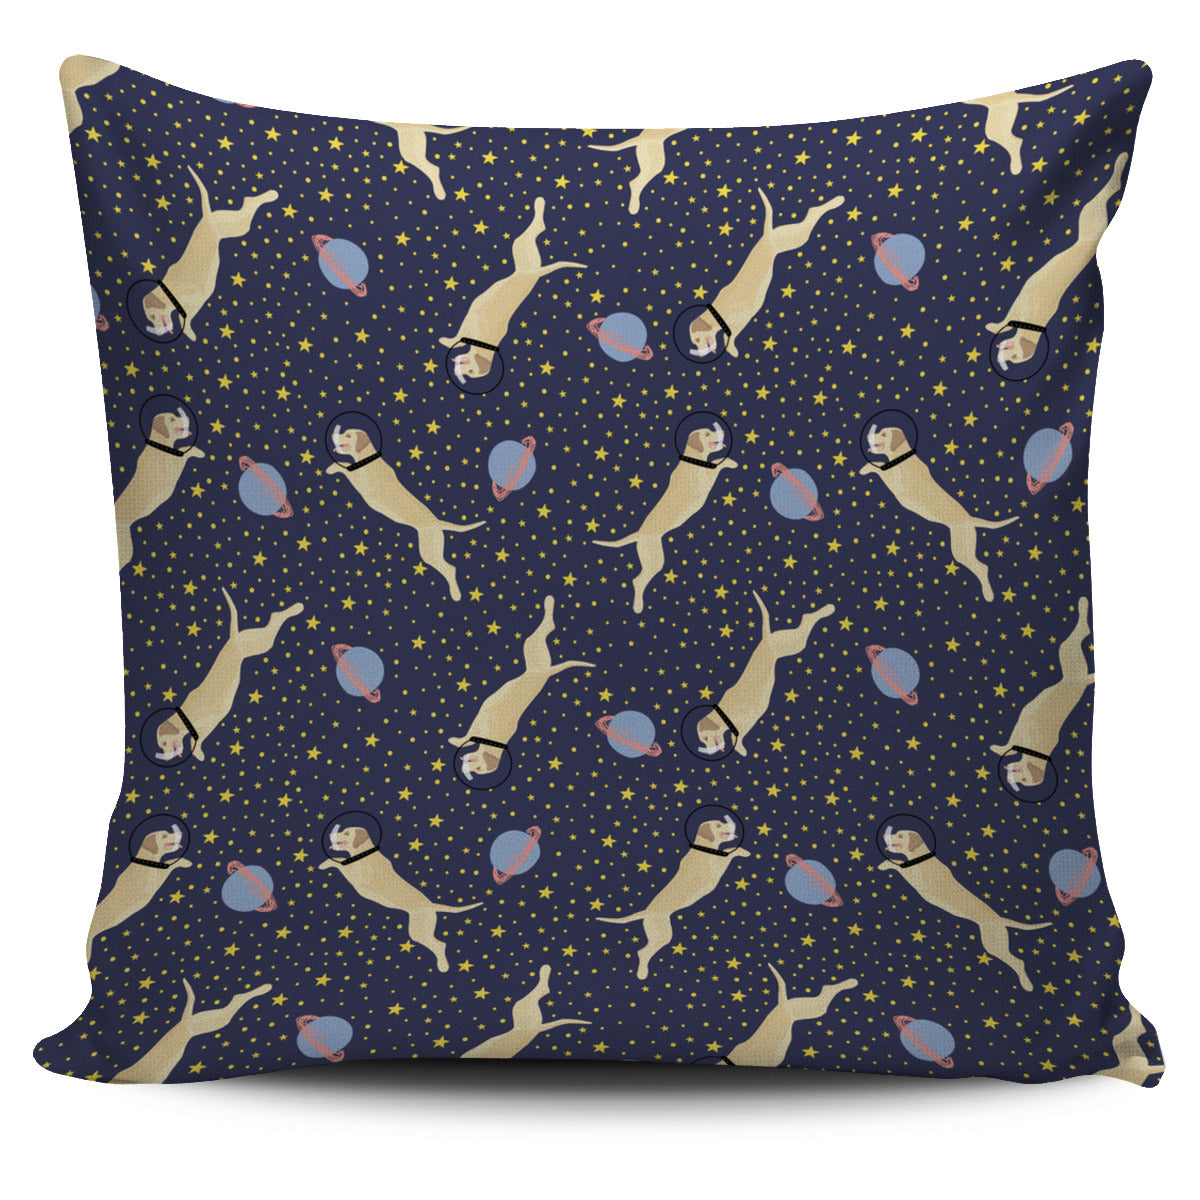 Space Labrador Pillow Cover